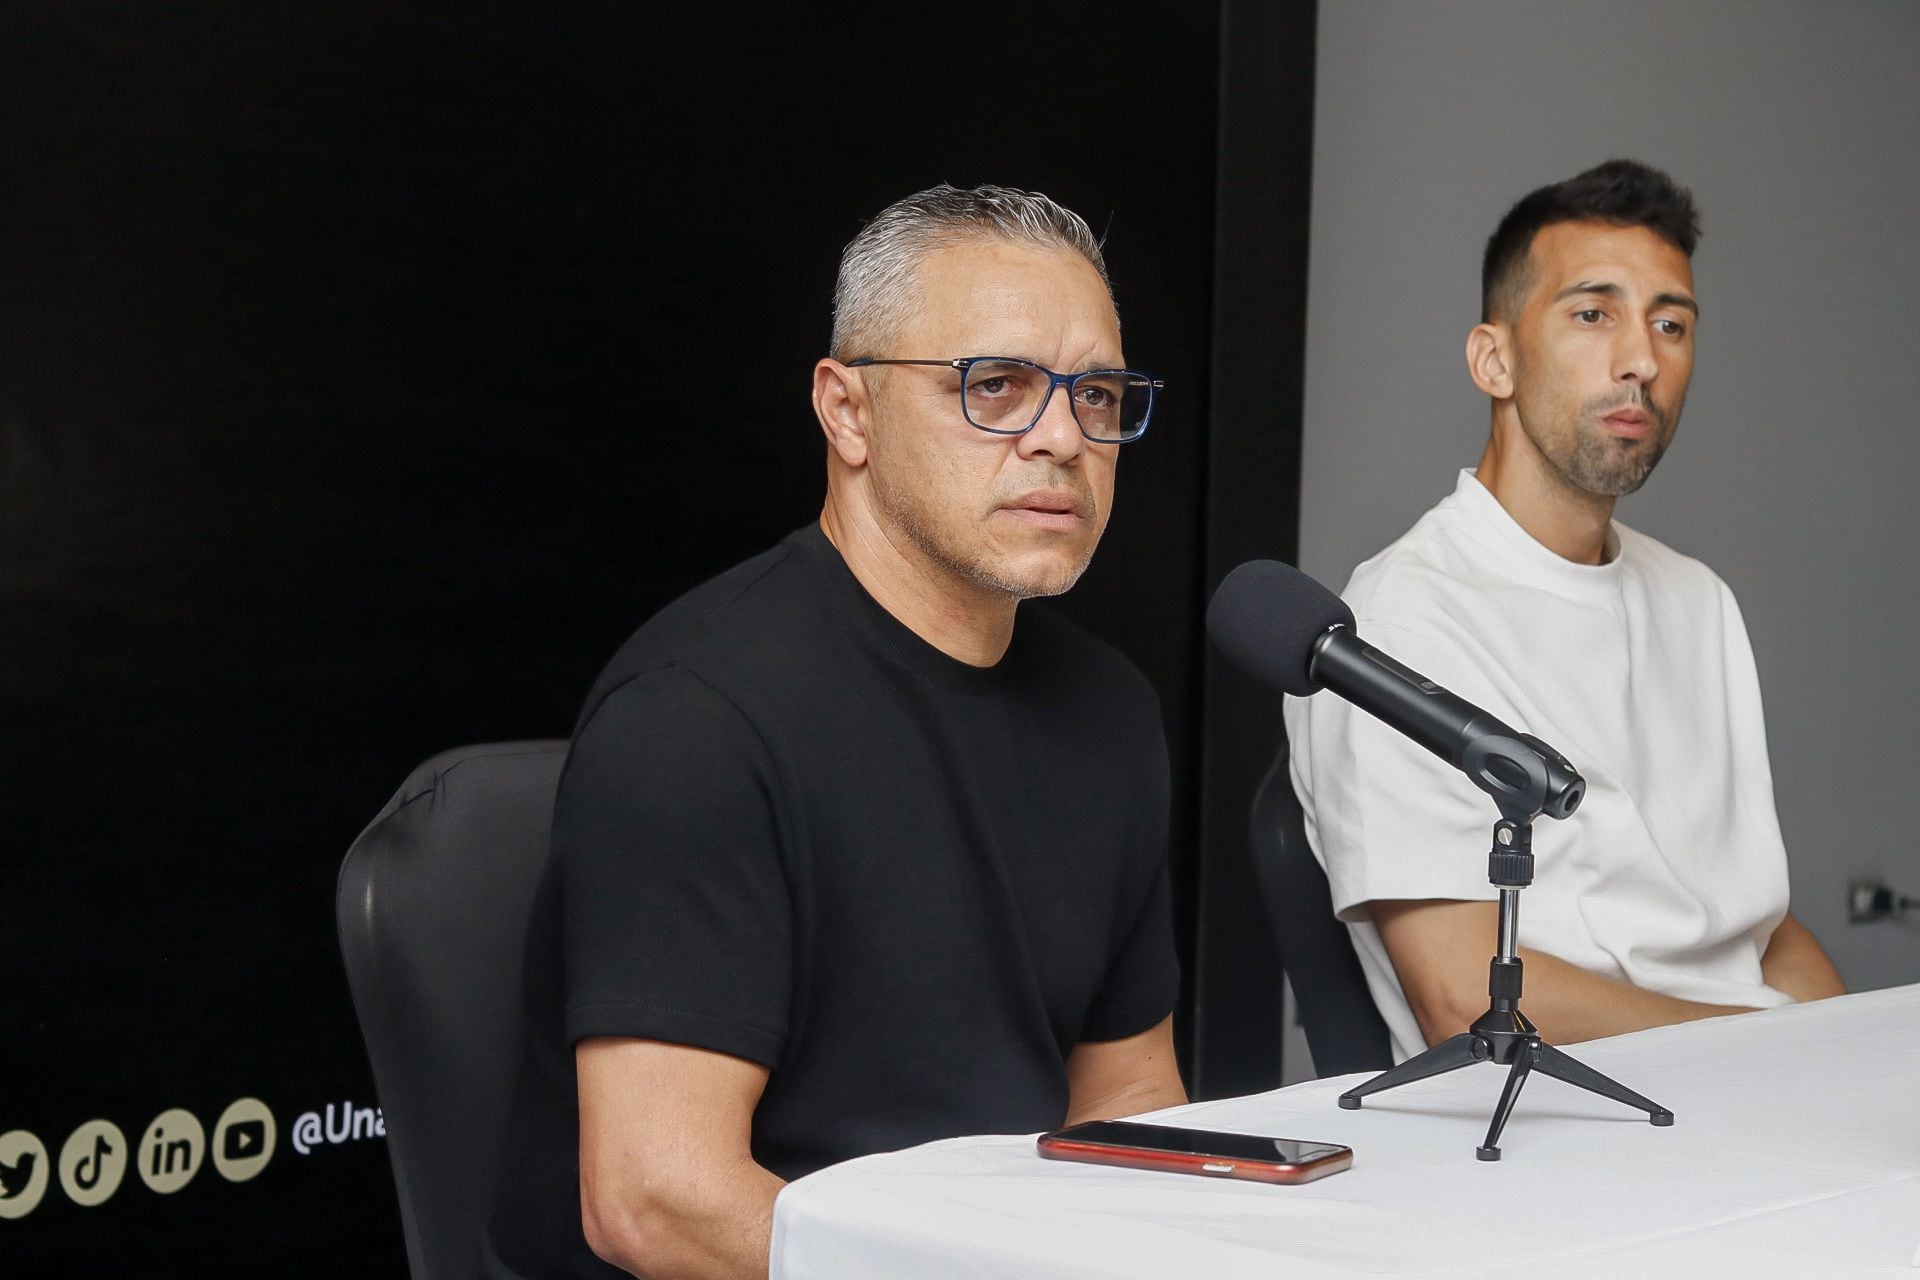 Rándall Row y Mariano Torres, integrantes del Deportivo Saprissa, estuvieron en la conferencia de prensa de la Recopa, que organizó la Unafut.